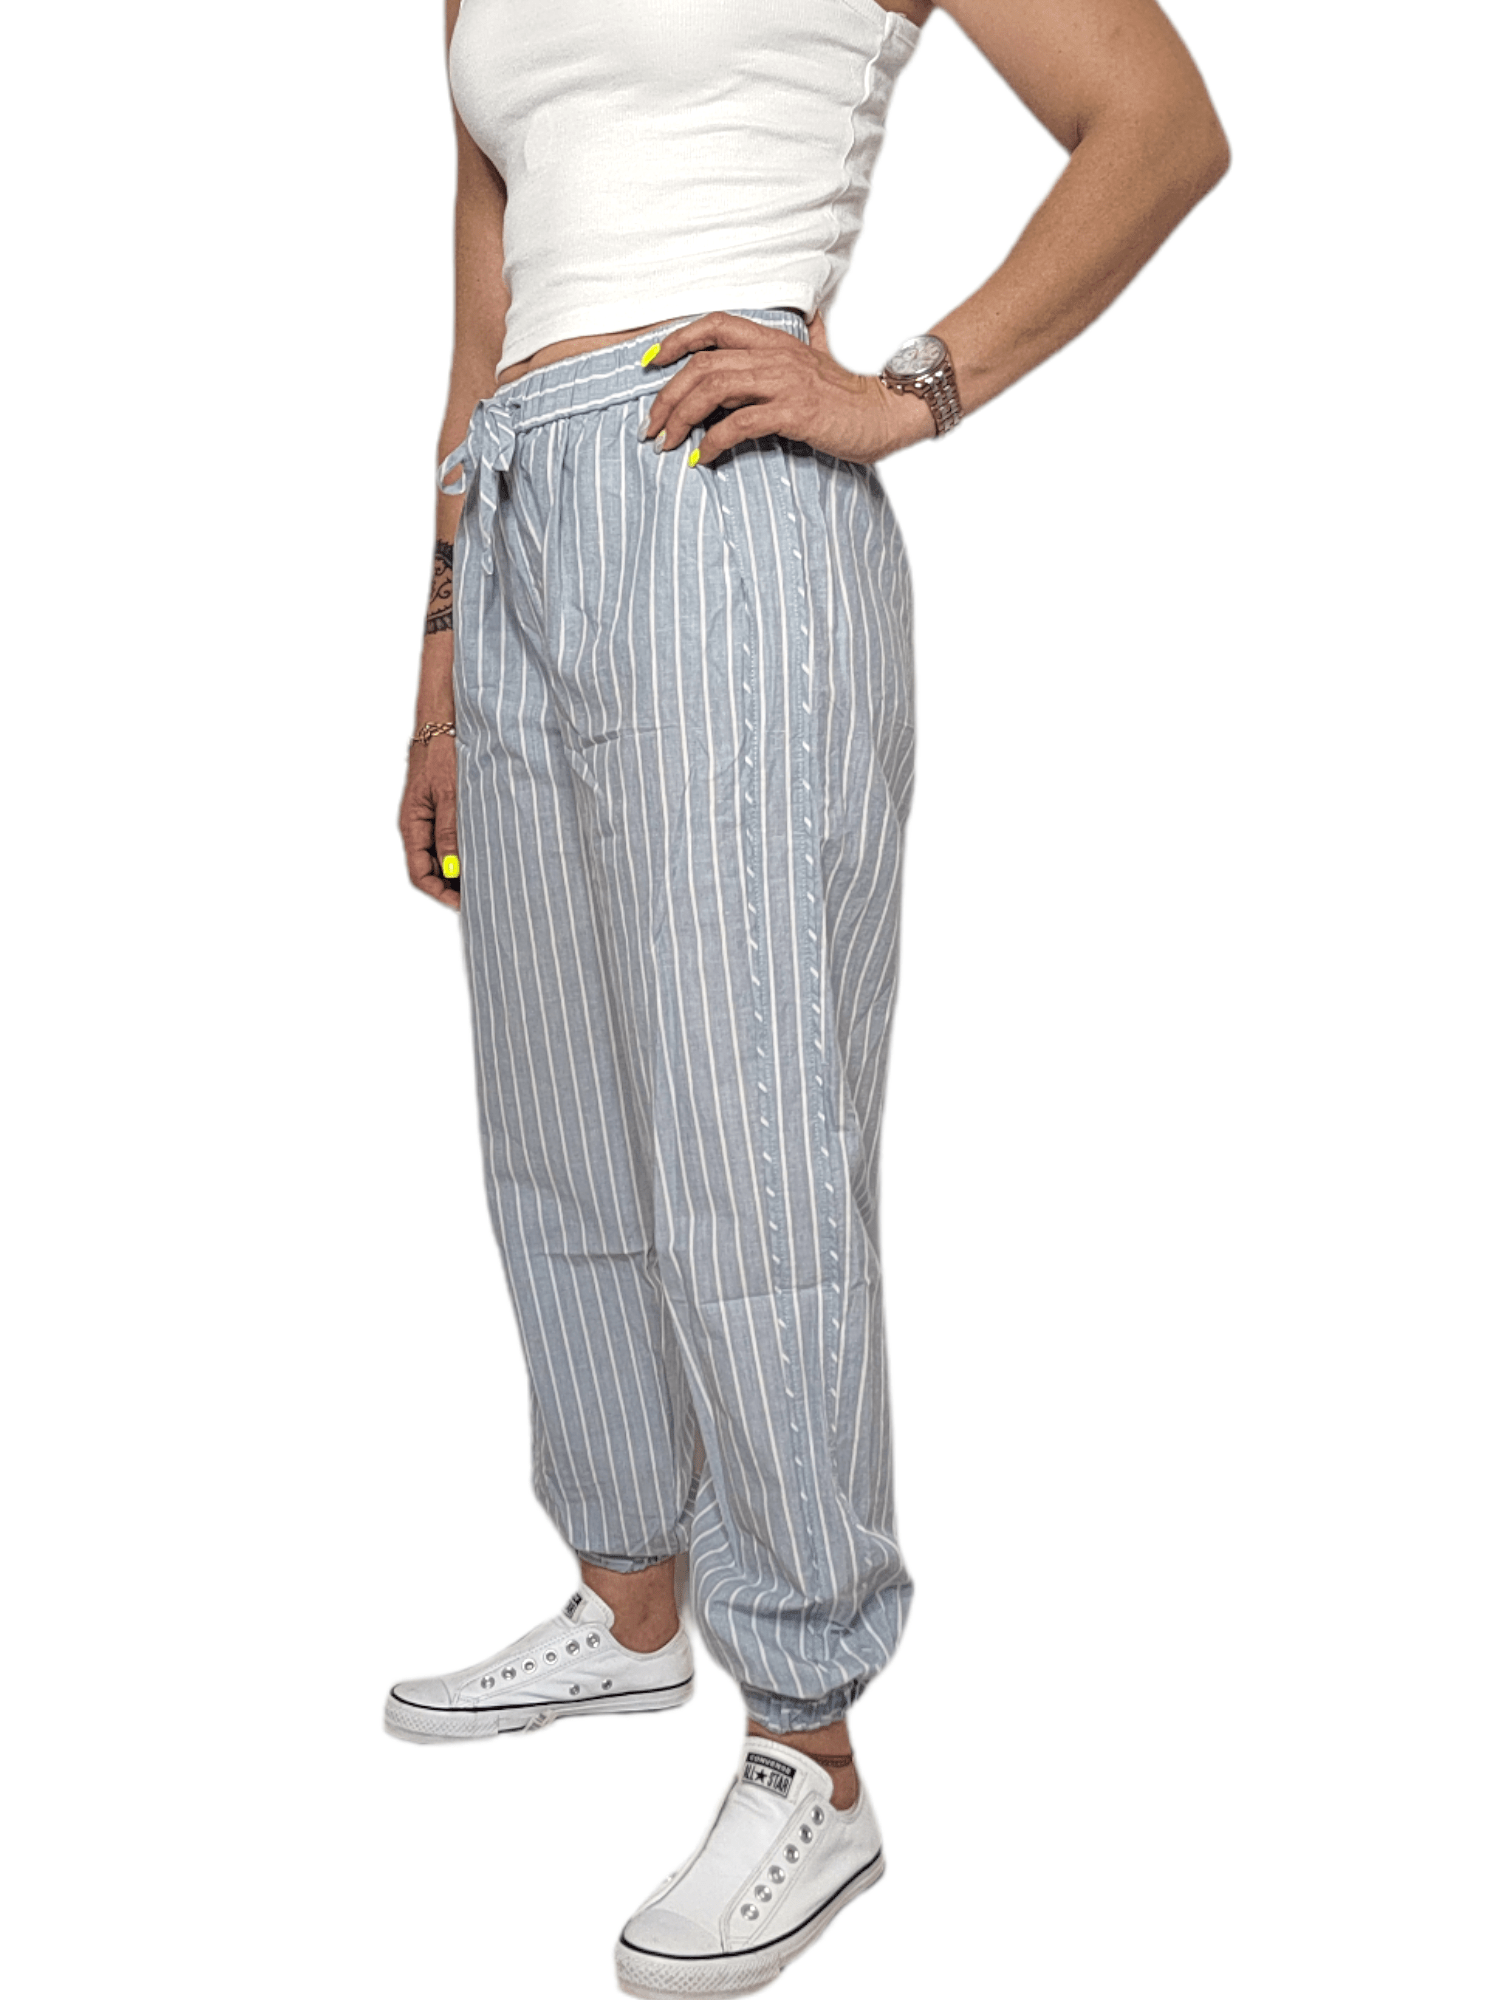 ElOutlet - Summer Women Pants Women Pants [4]